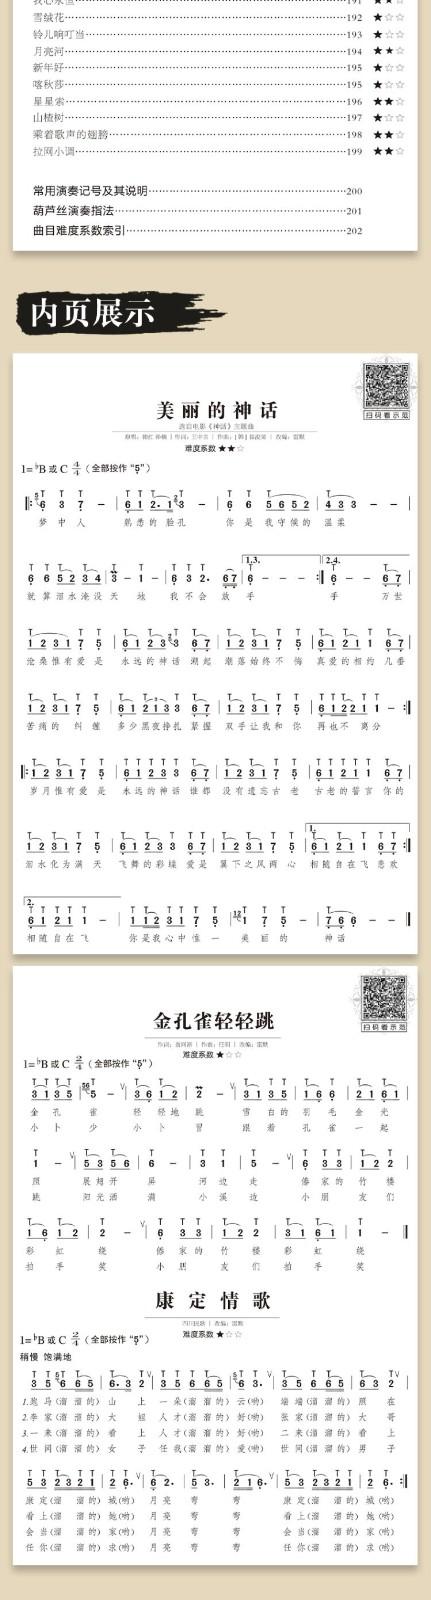 葫芦丝流行金曲176首初学者初学入门自学独奏流行歌曲经典曲谱大全